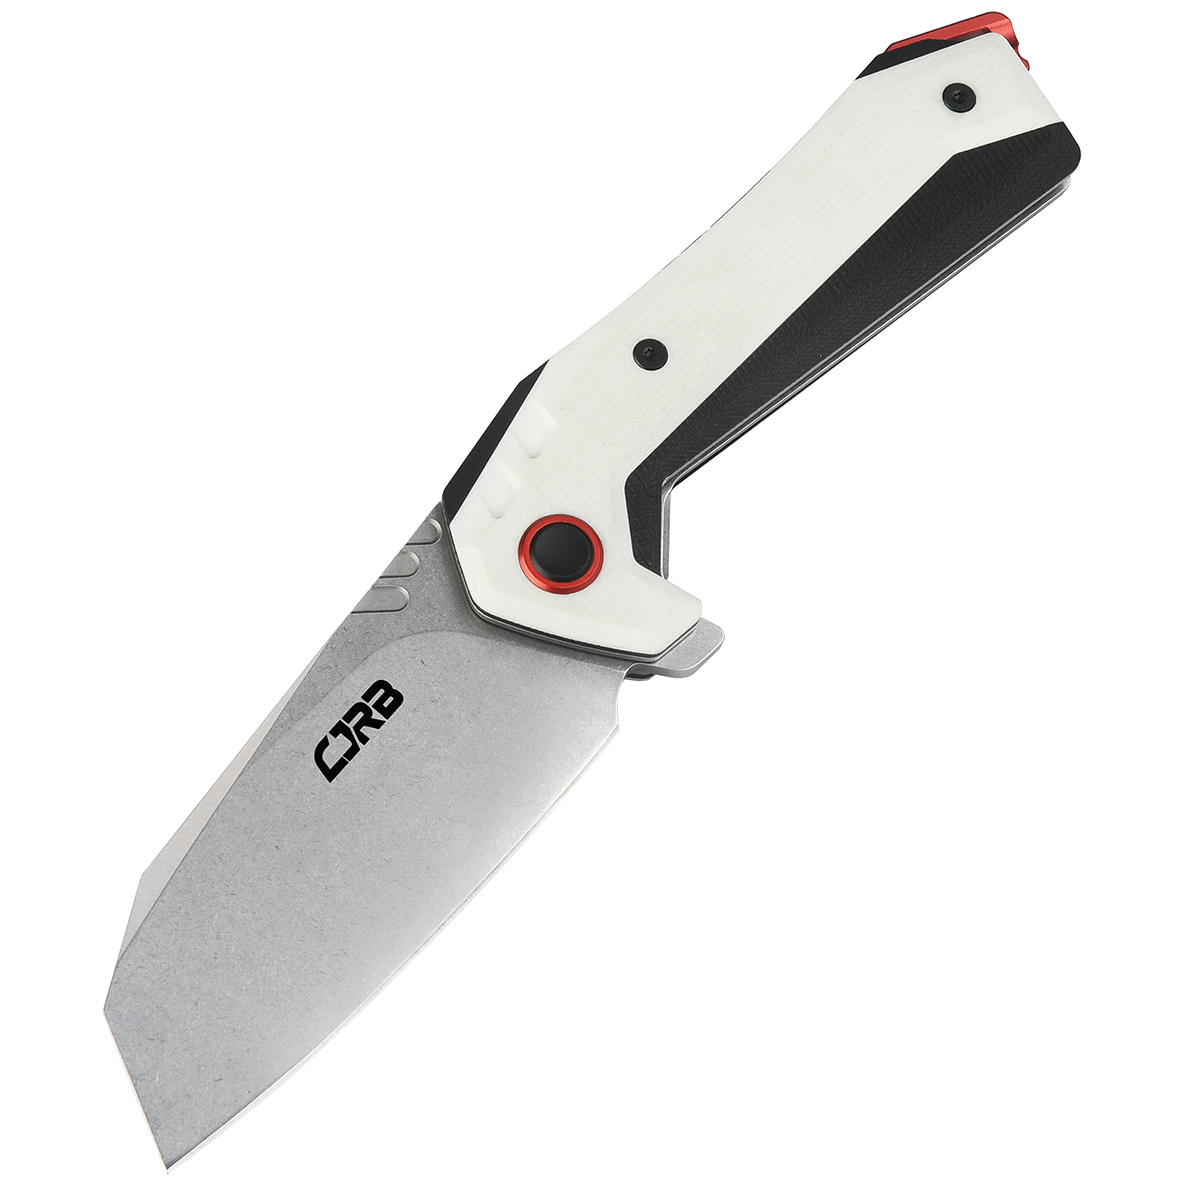 Складной нож CJRB Tigris, сталь AR-RPM9, White G10 складной нож cjrb tigris сталь ar rpm9 white g10